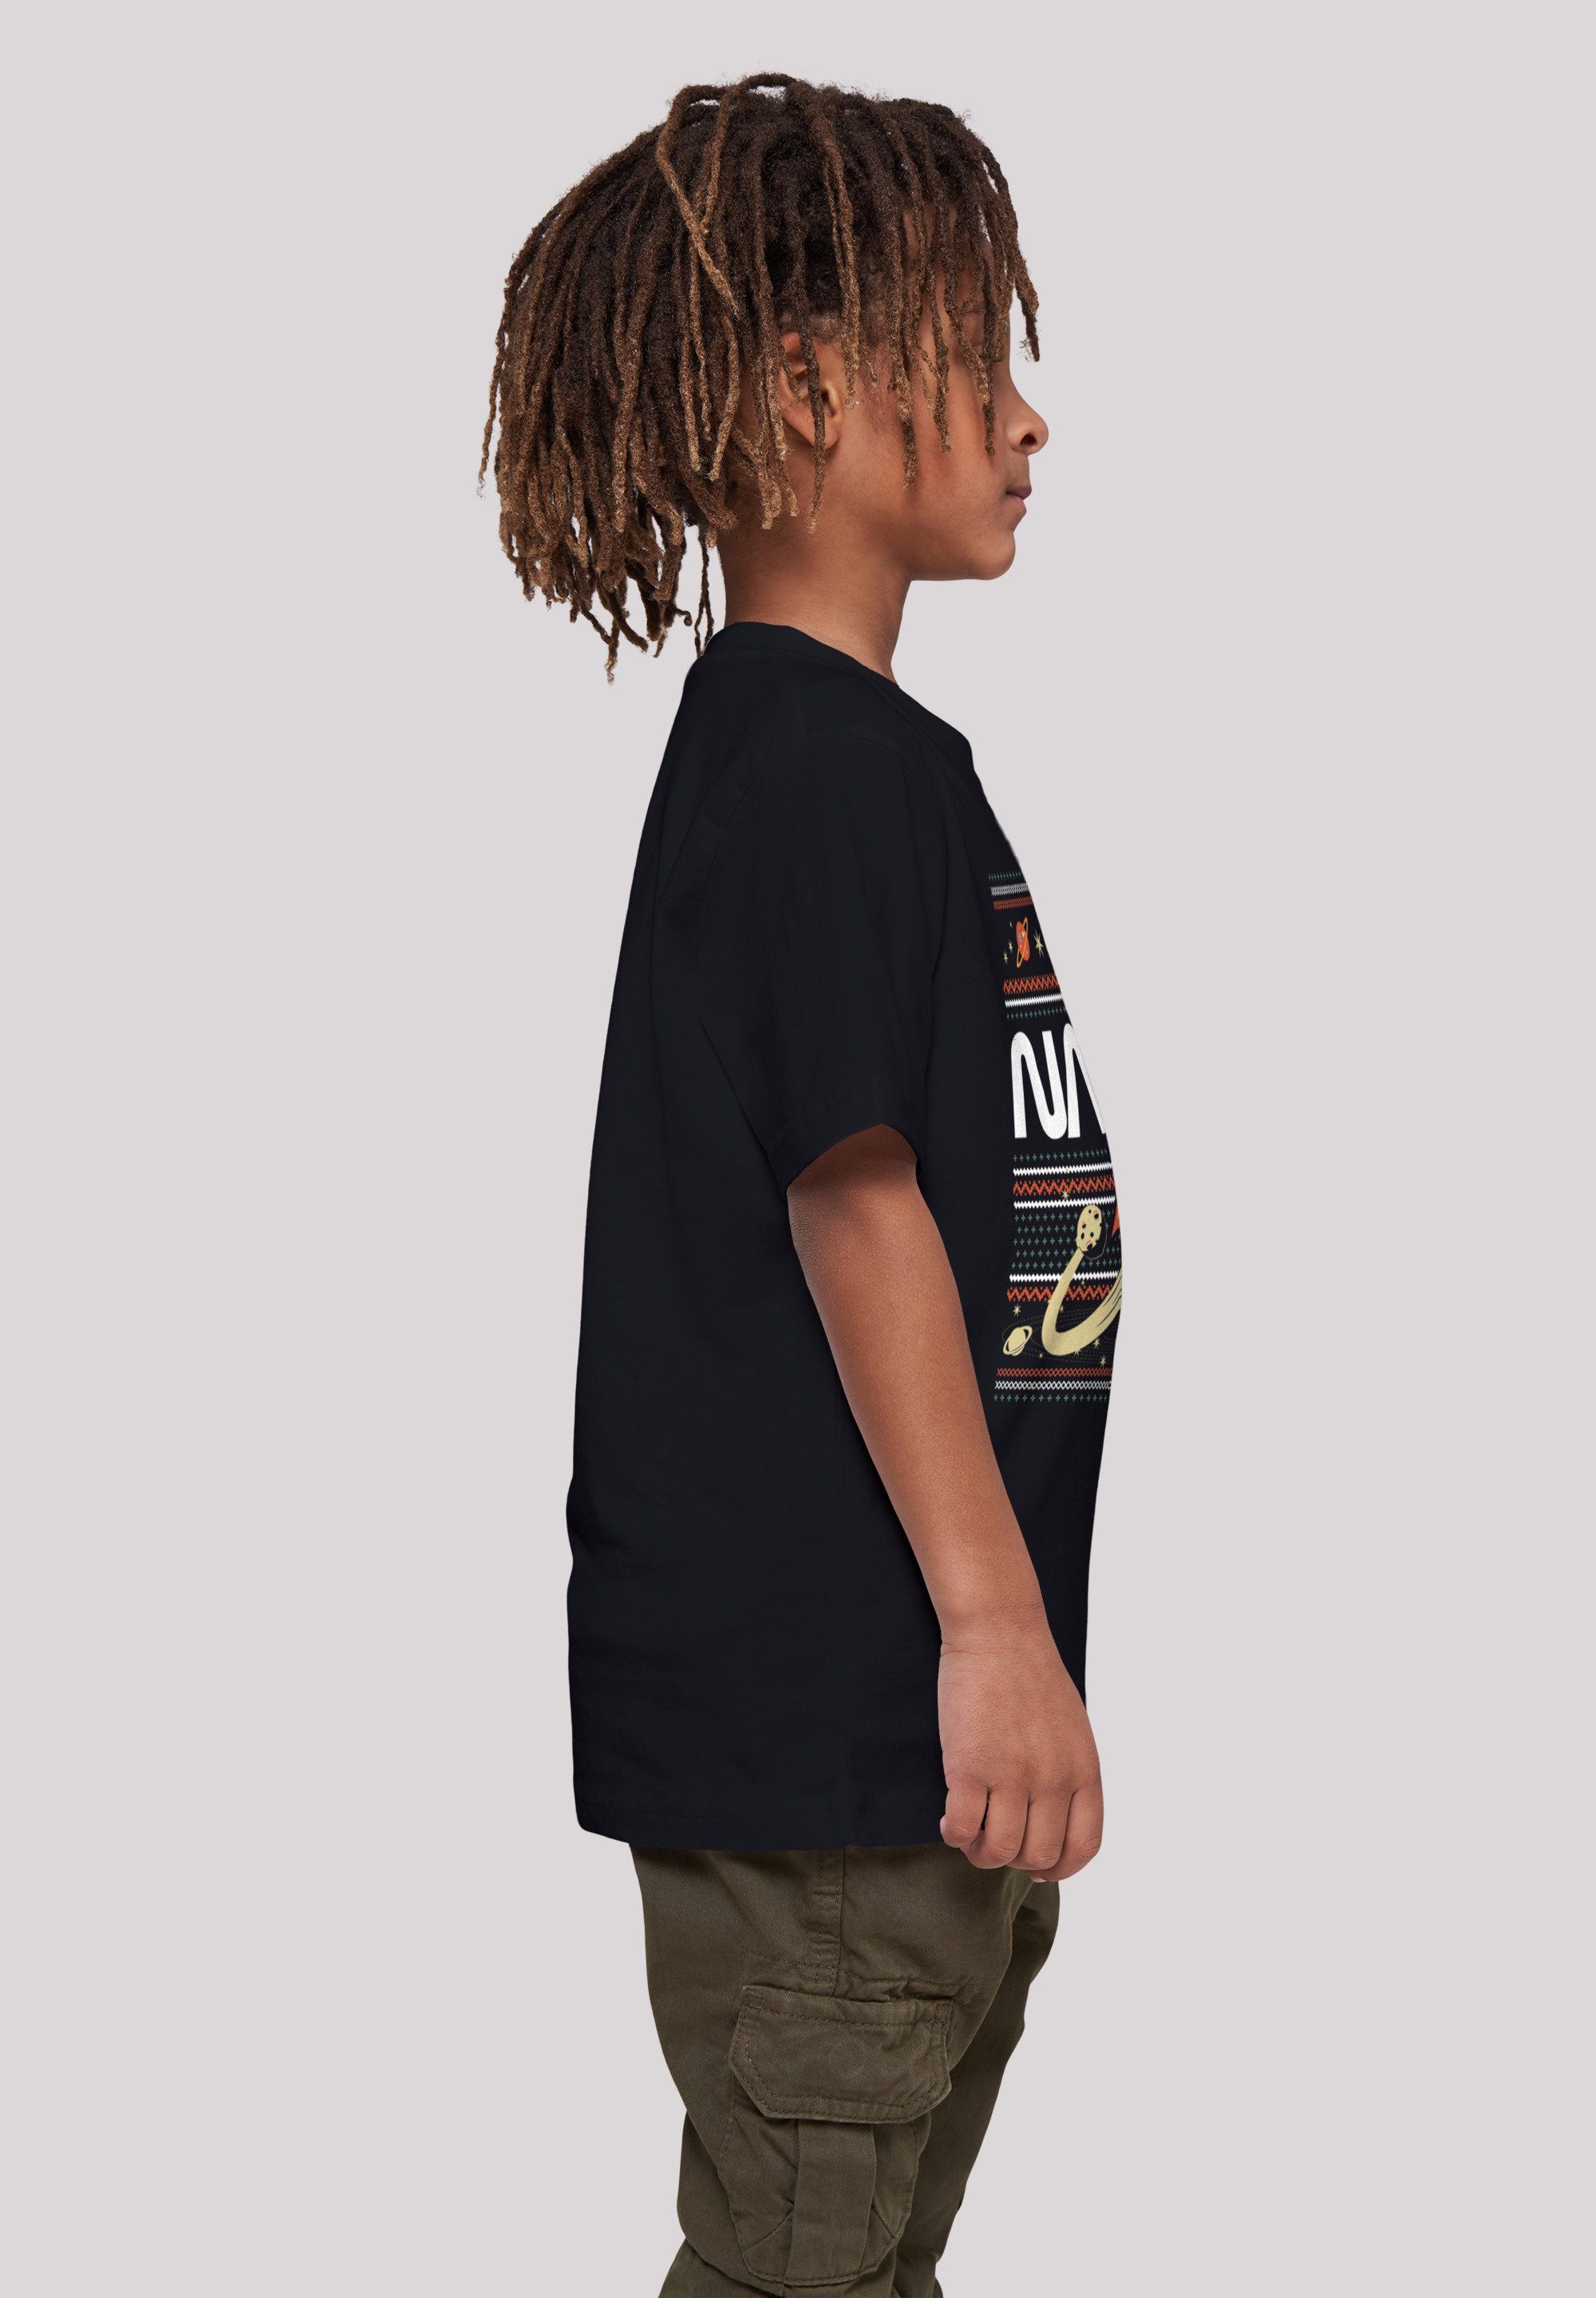 Unisex Merch,Jungen,Mädchen,Bedruckt Isle F4NT4STIC Fair NASA Kinder,Premium T-Shirt